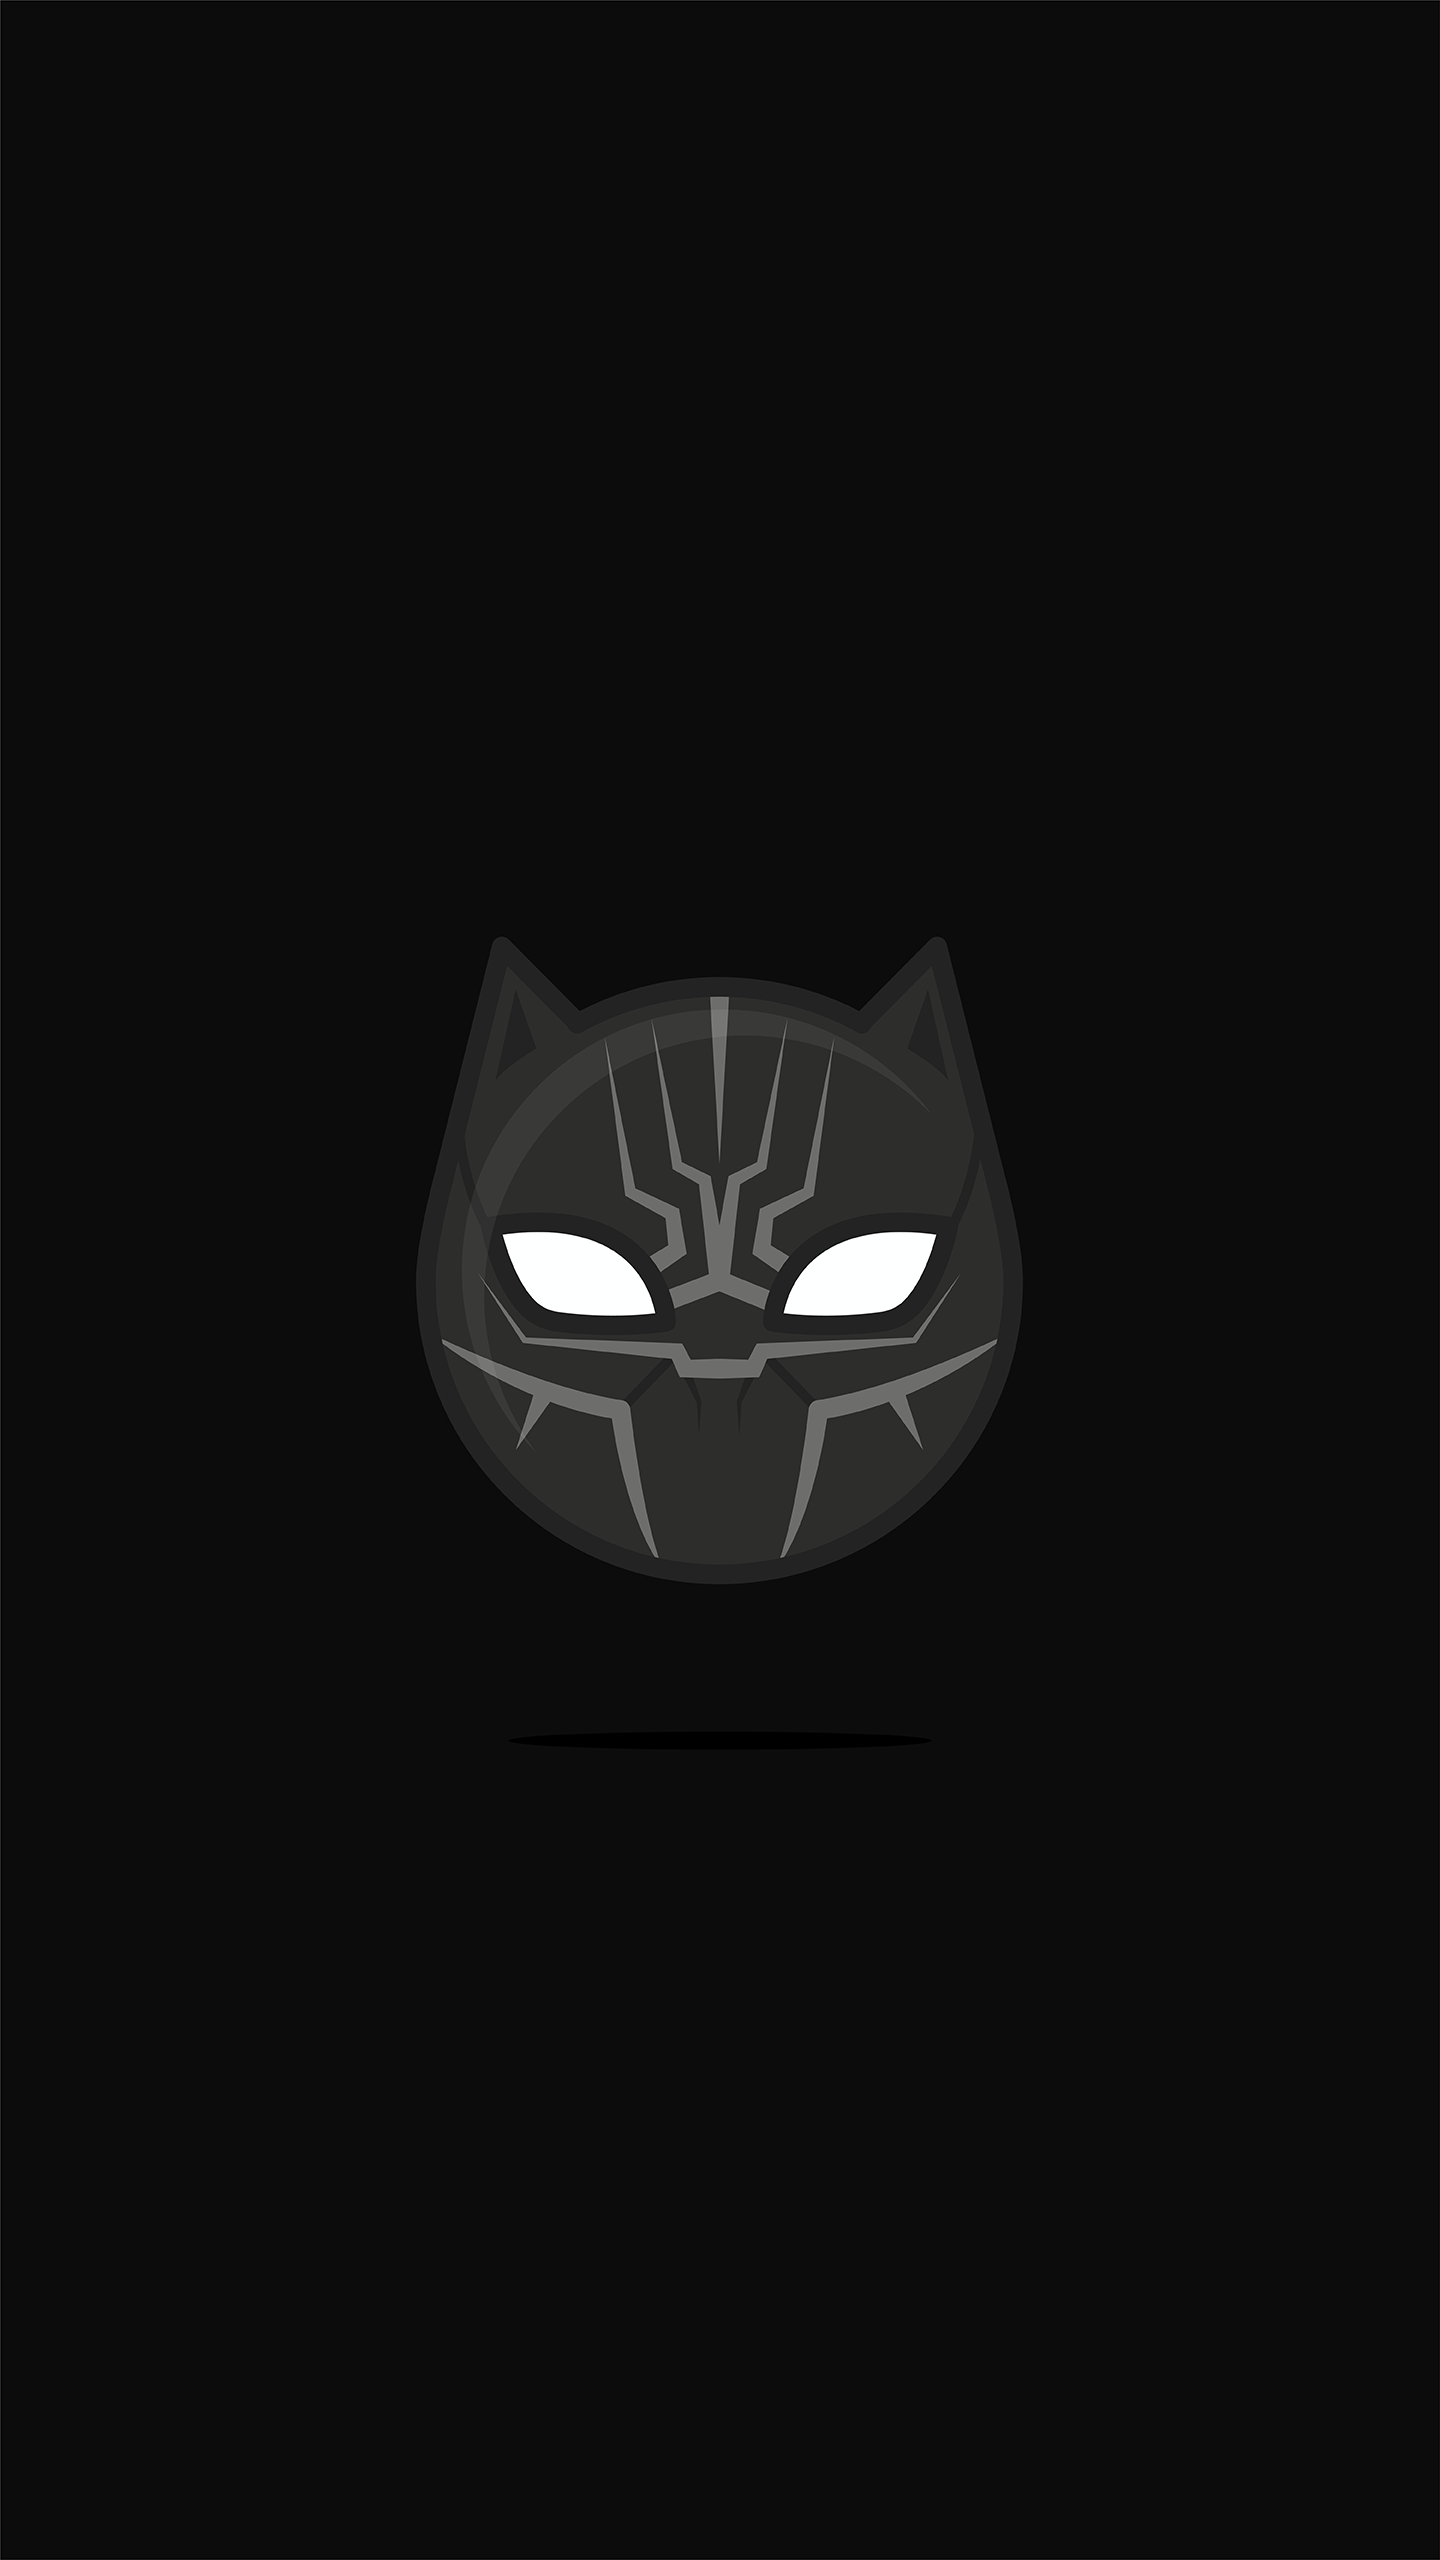 Black Panther Black Minimal iPhone Wallpaper. iPad art, Panther